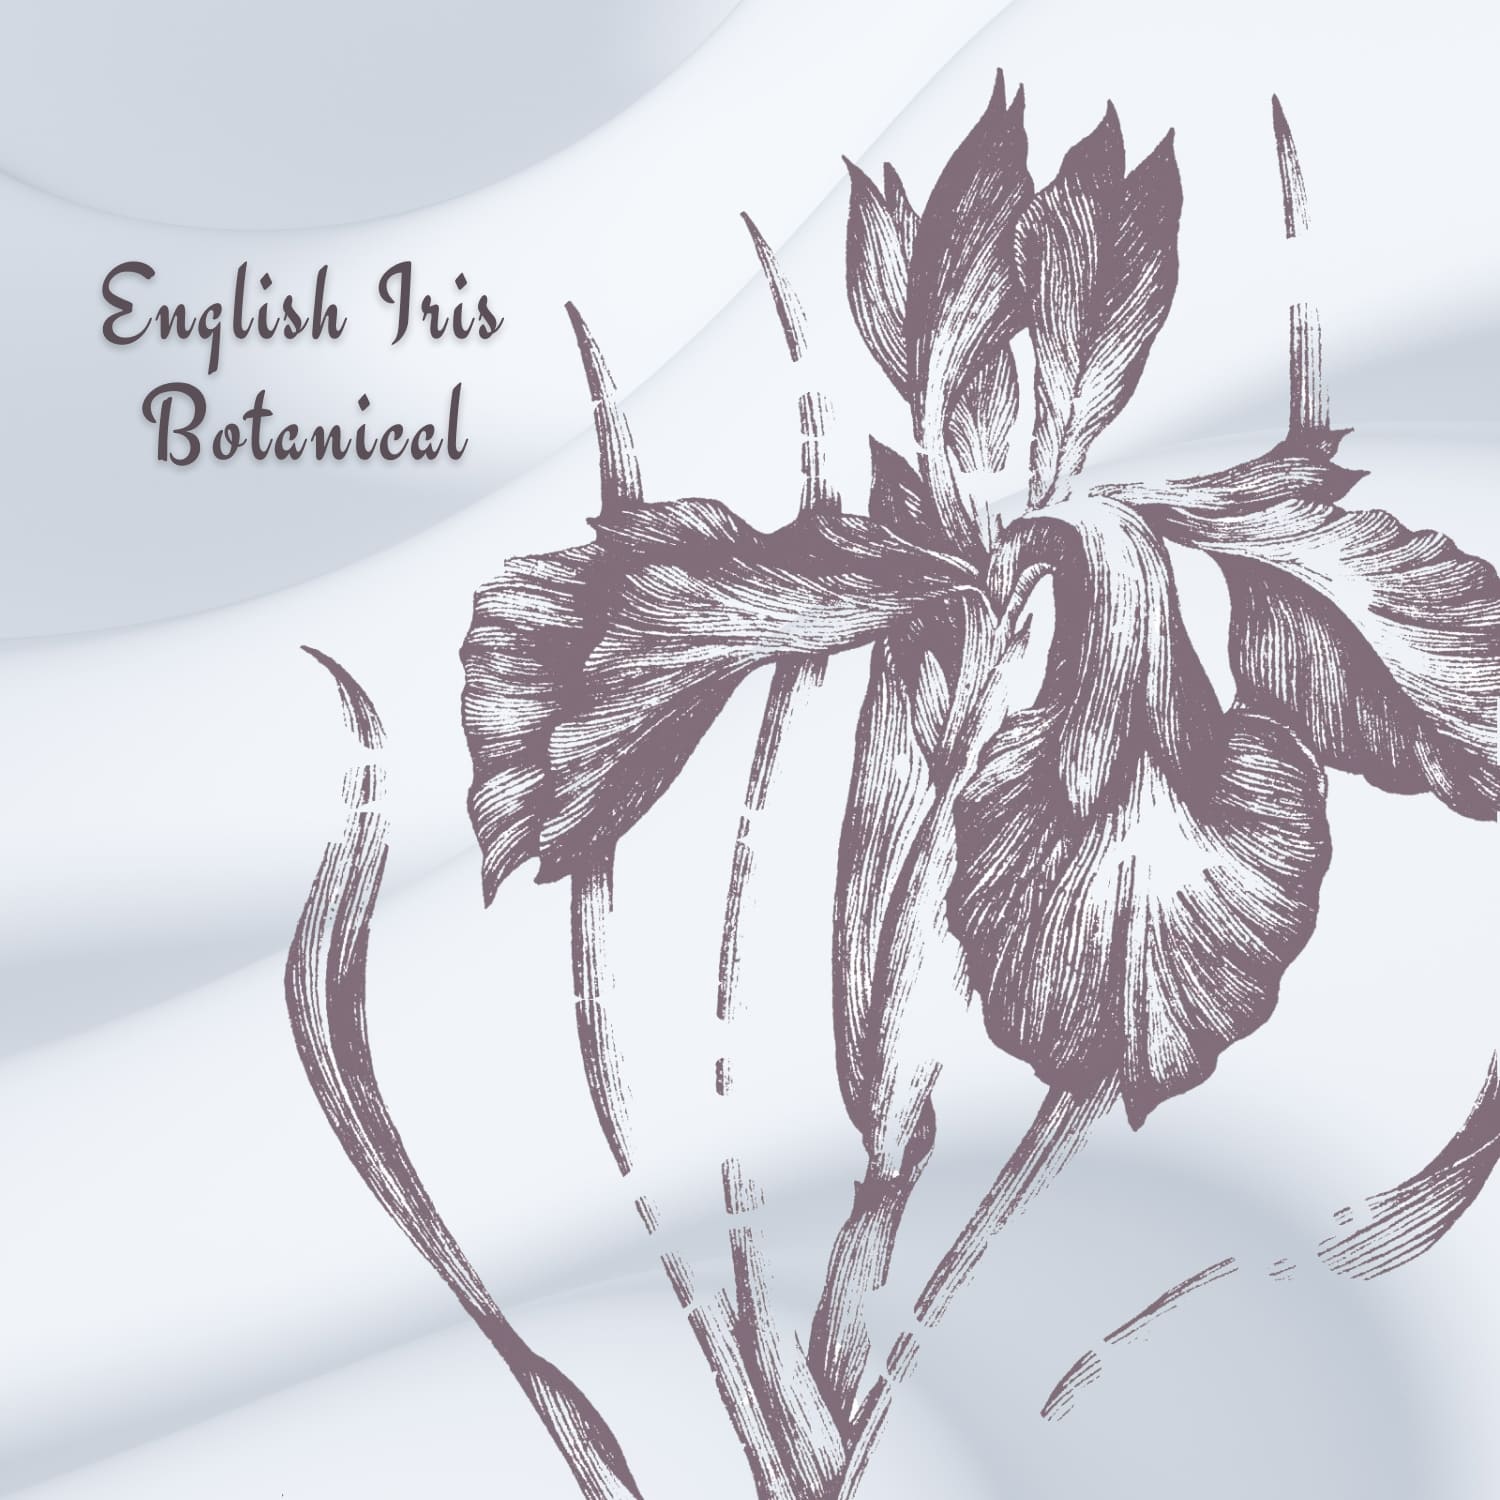 English Iris Botanical Illustration cover image.